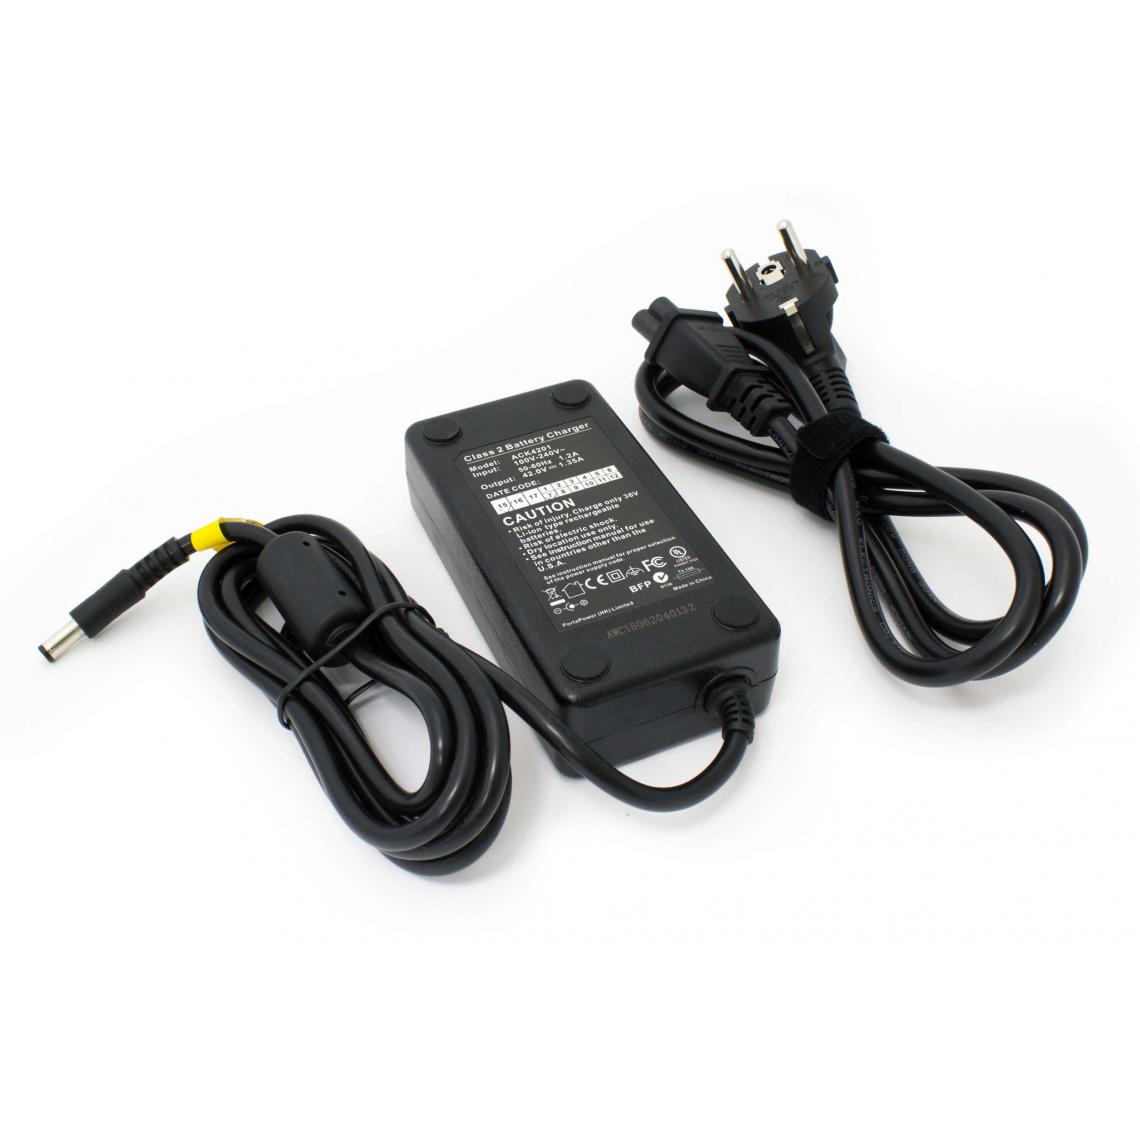 Vhbw - vhbw chargeur compatible avec Mifa Phylion vélos électriques, E-bike - Pour batteries Li-ion de 36 V, avec connexion par prise ronde - Accessoires Mobilité électrique